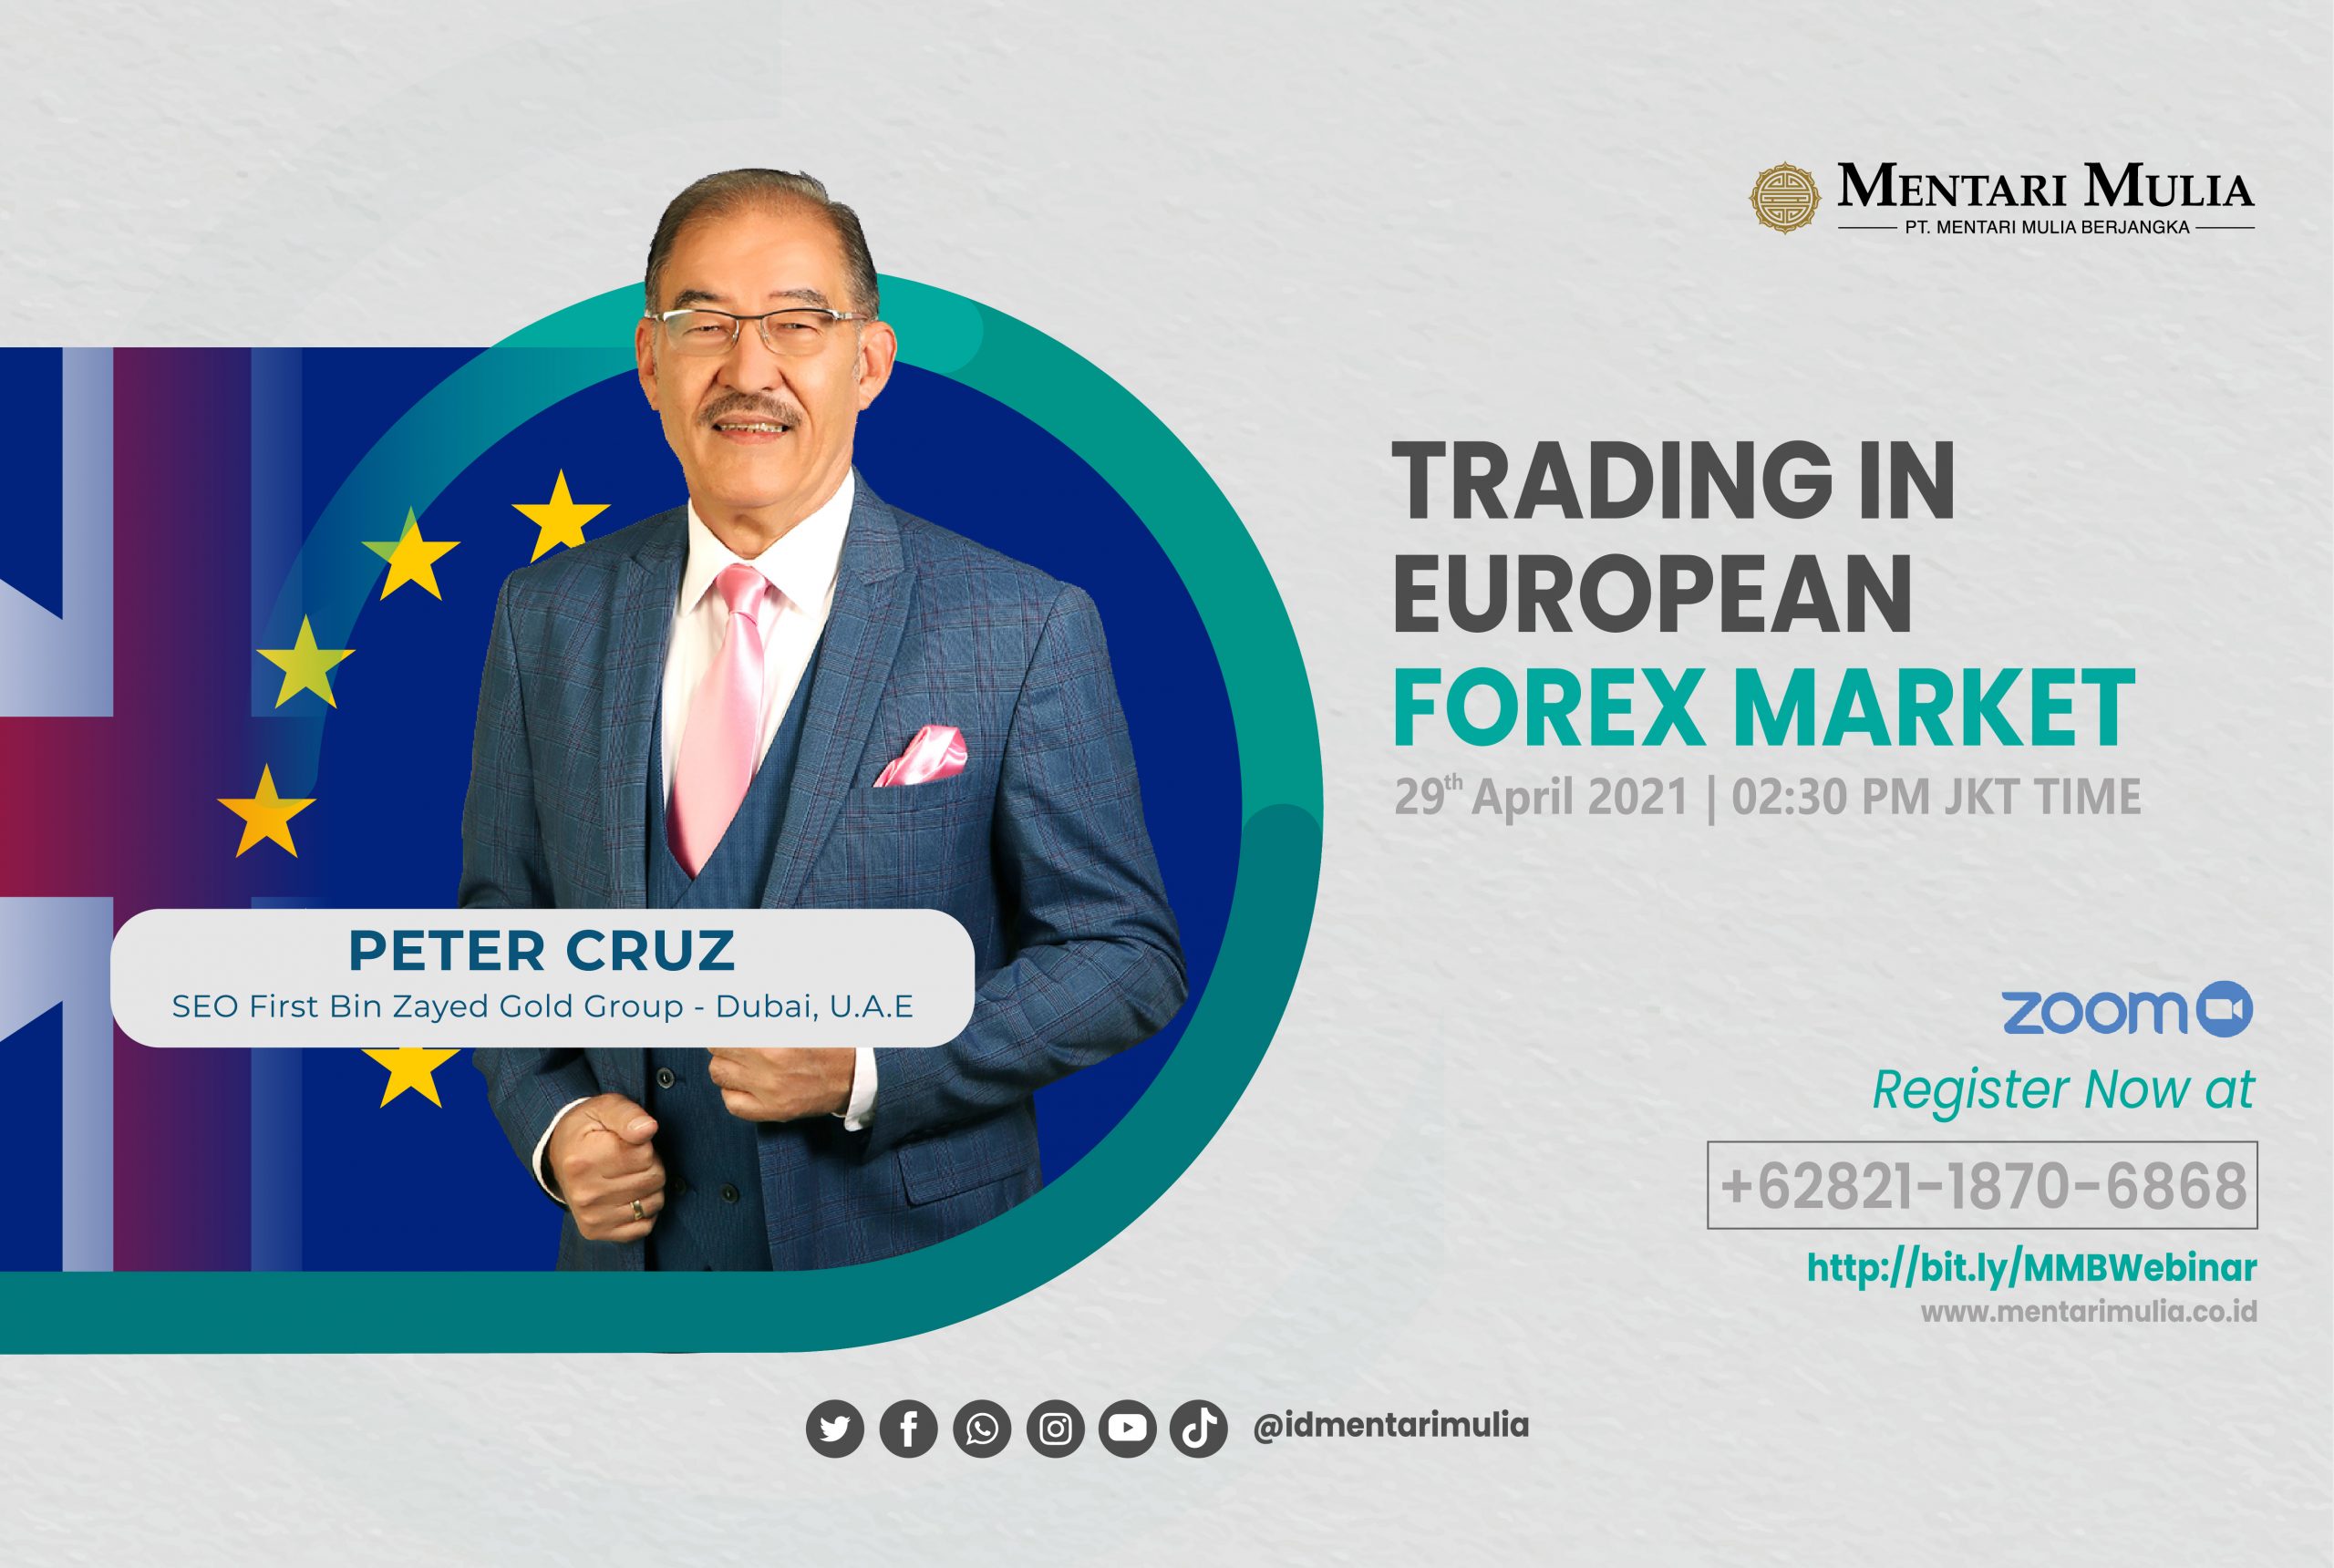 Ikuti Seminar “Trading forex di Pasar Eropa” Bersama Peter Cruz!